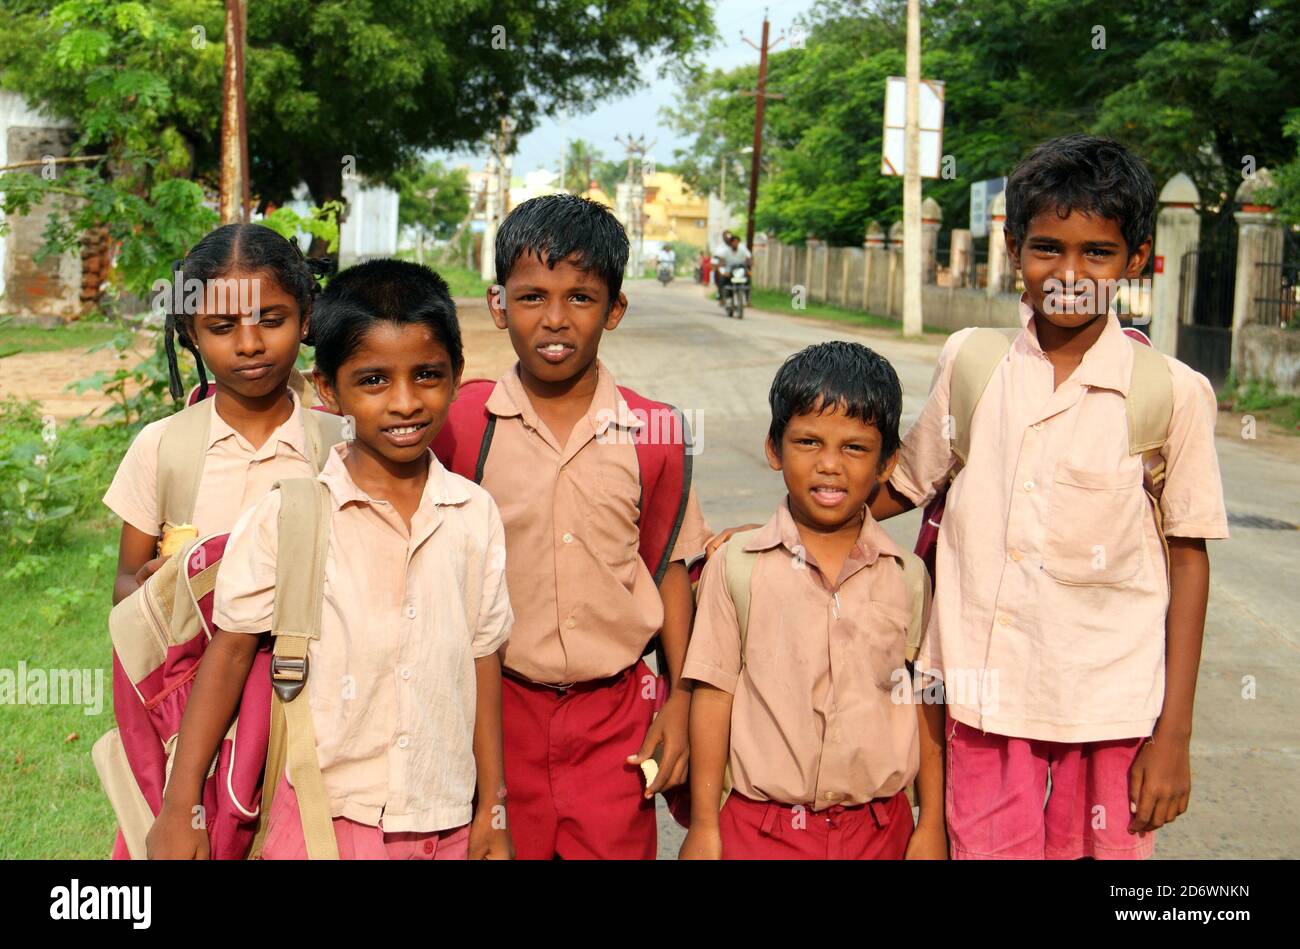 KANCHI, INDE - AOÛT 16 : les enfants hindous non identifiés vêtus d'uniforme rentrent chez eux après les cours le 16 août 2020 à Kanchipuram, Tamil Nadu Banque D'Images